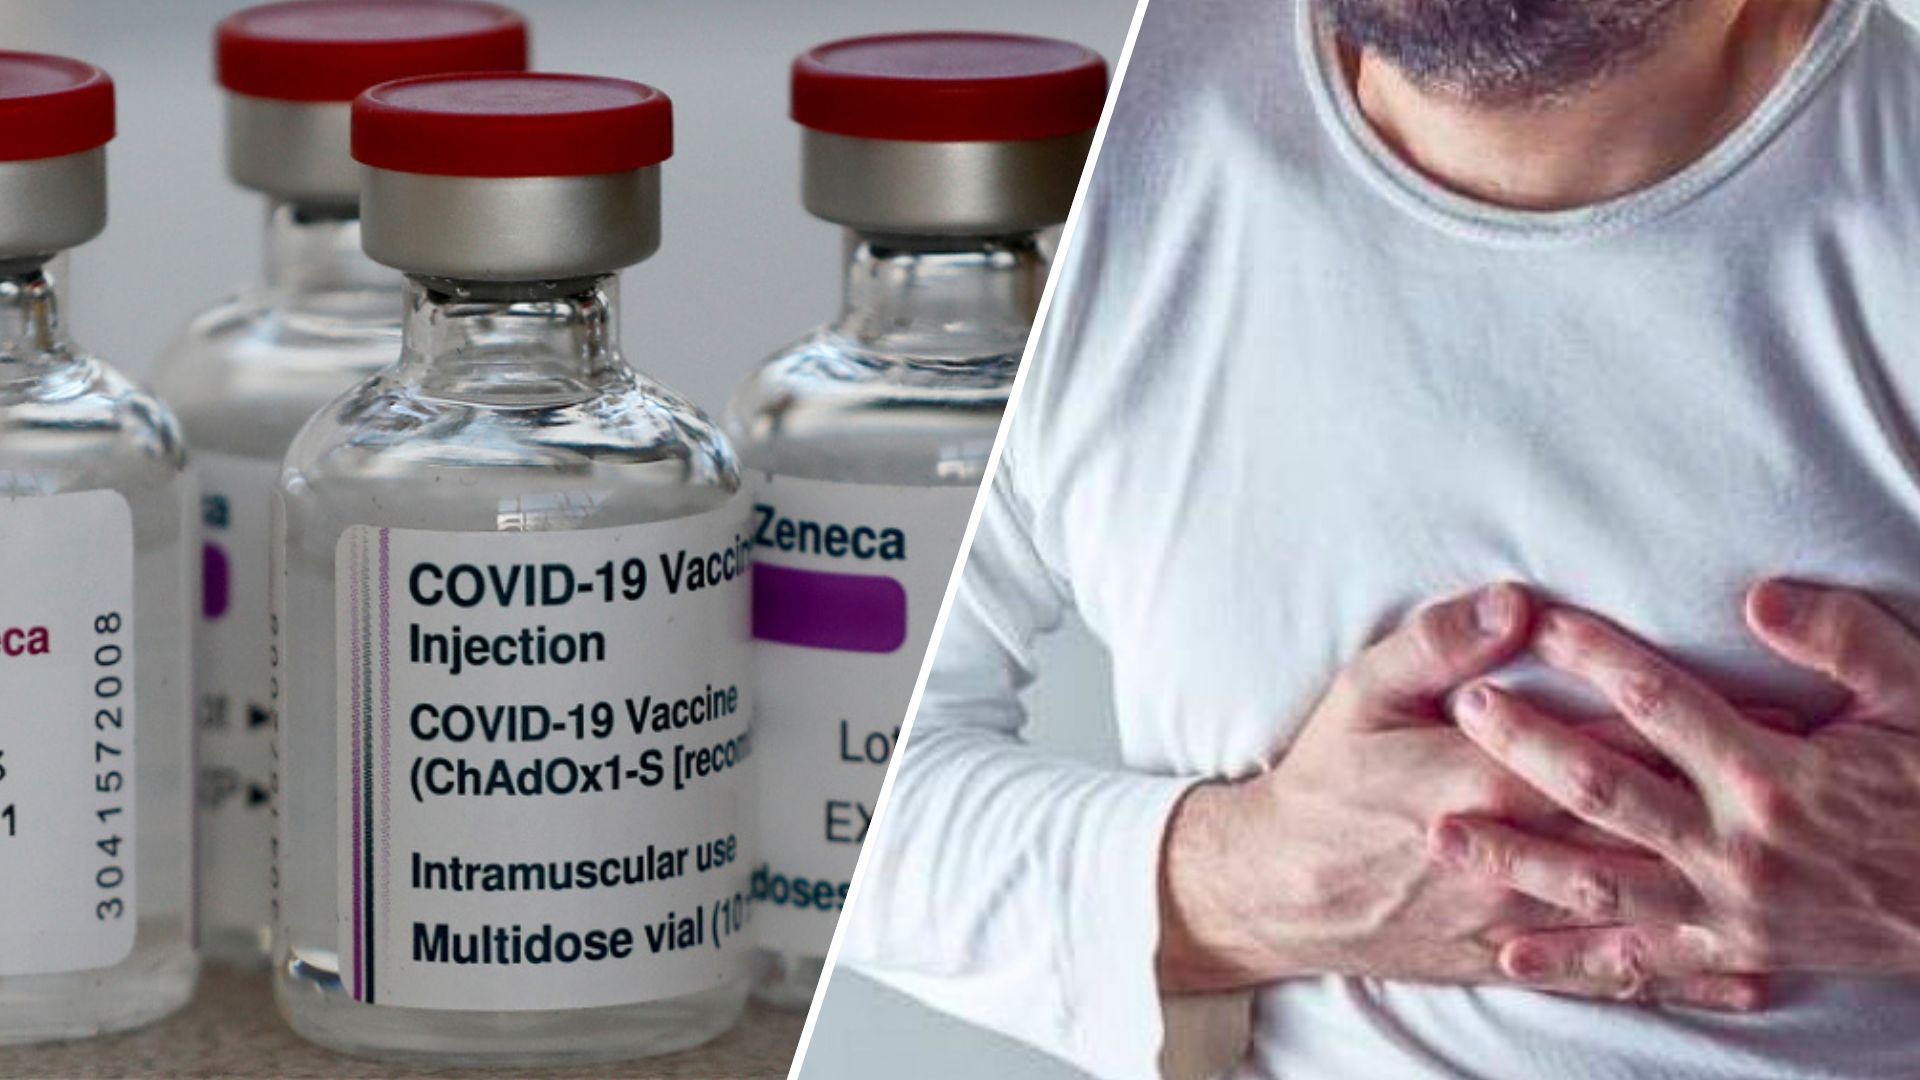 Британско-шведская фармацевтическая компания AstraZeneca впервые признала, что ее вакцина от Covid-19 может вызвать смертельный побочный эффект свертывания крови, речь идет о тромбозе.